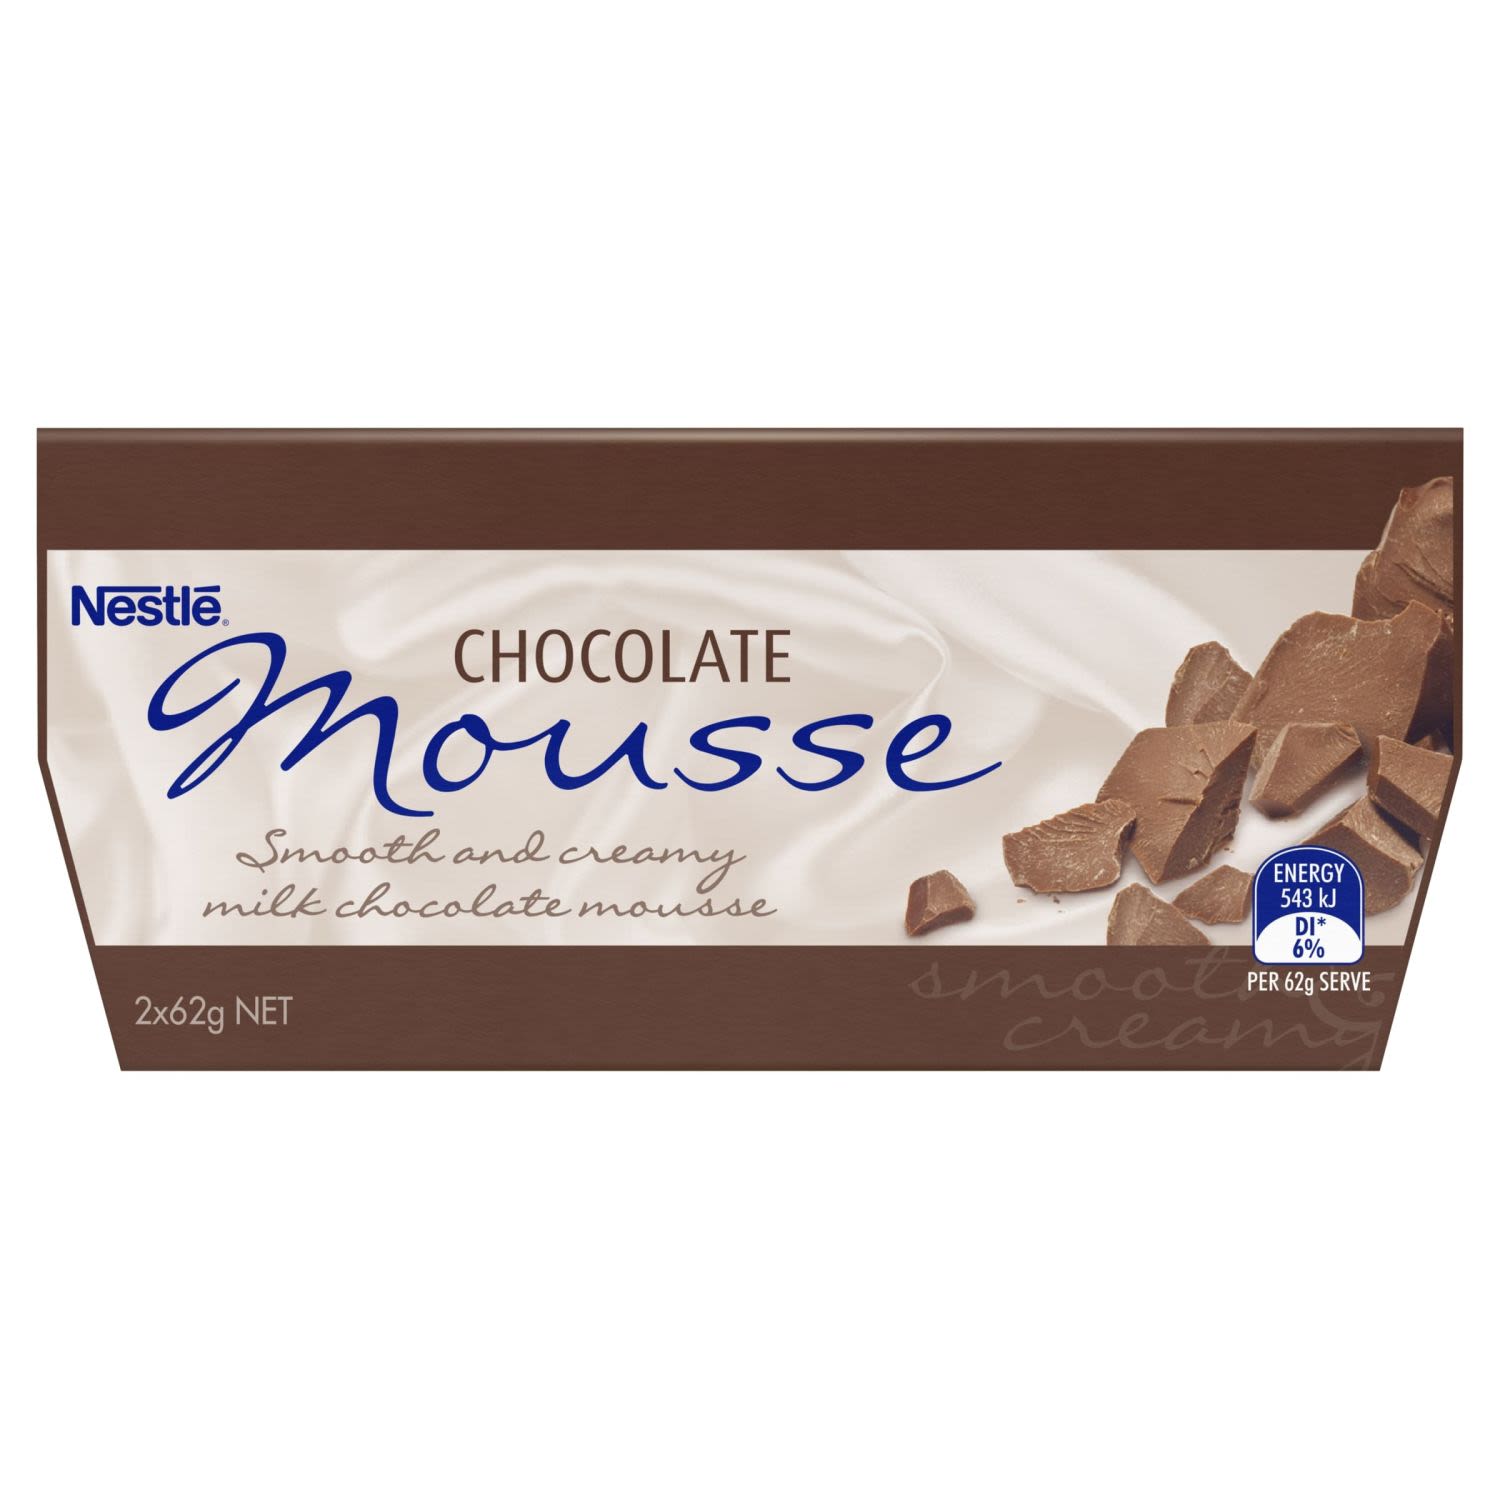 Nestlé Chocolate Mousse, 2 Each